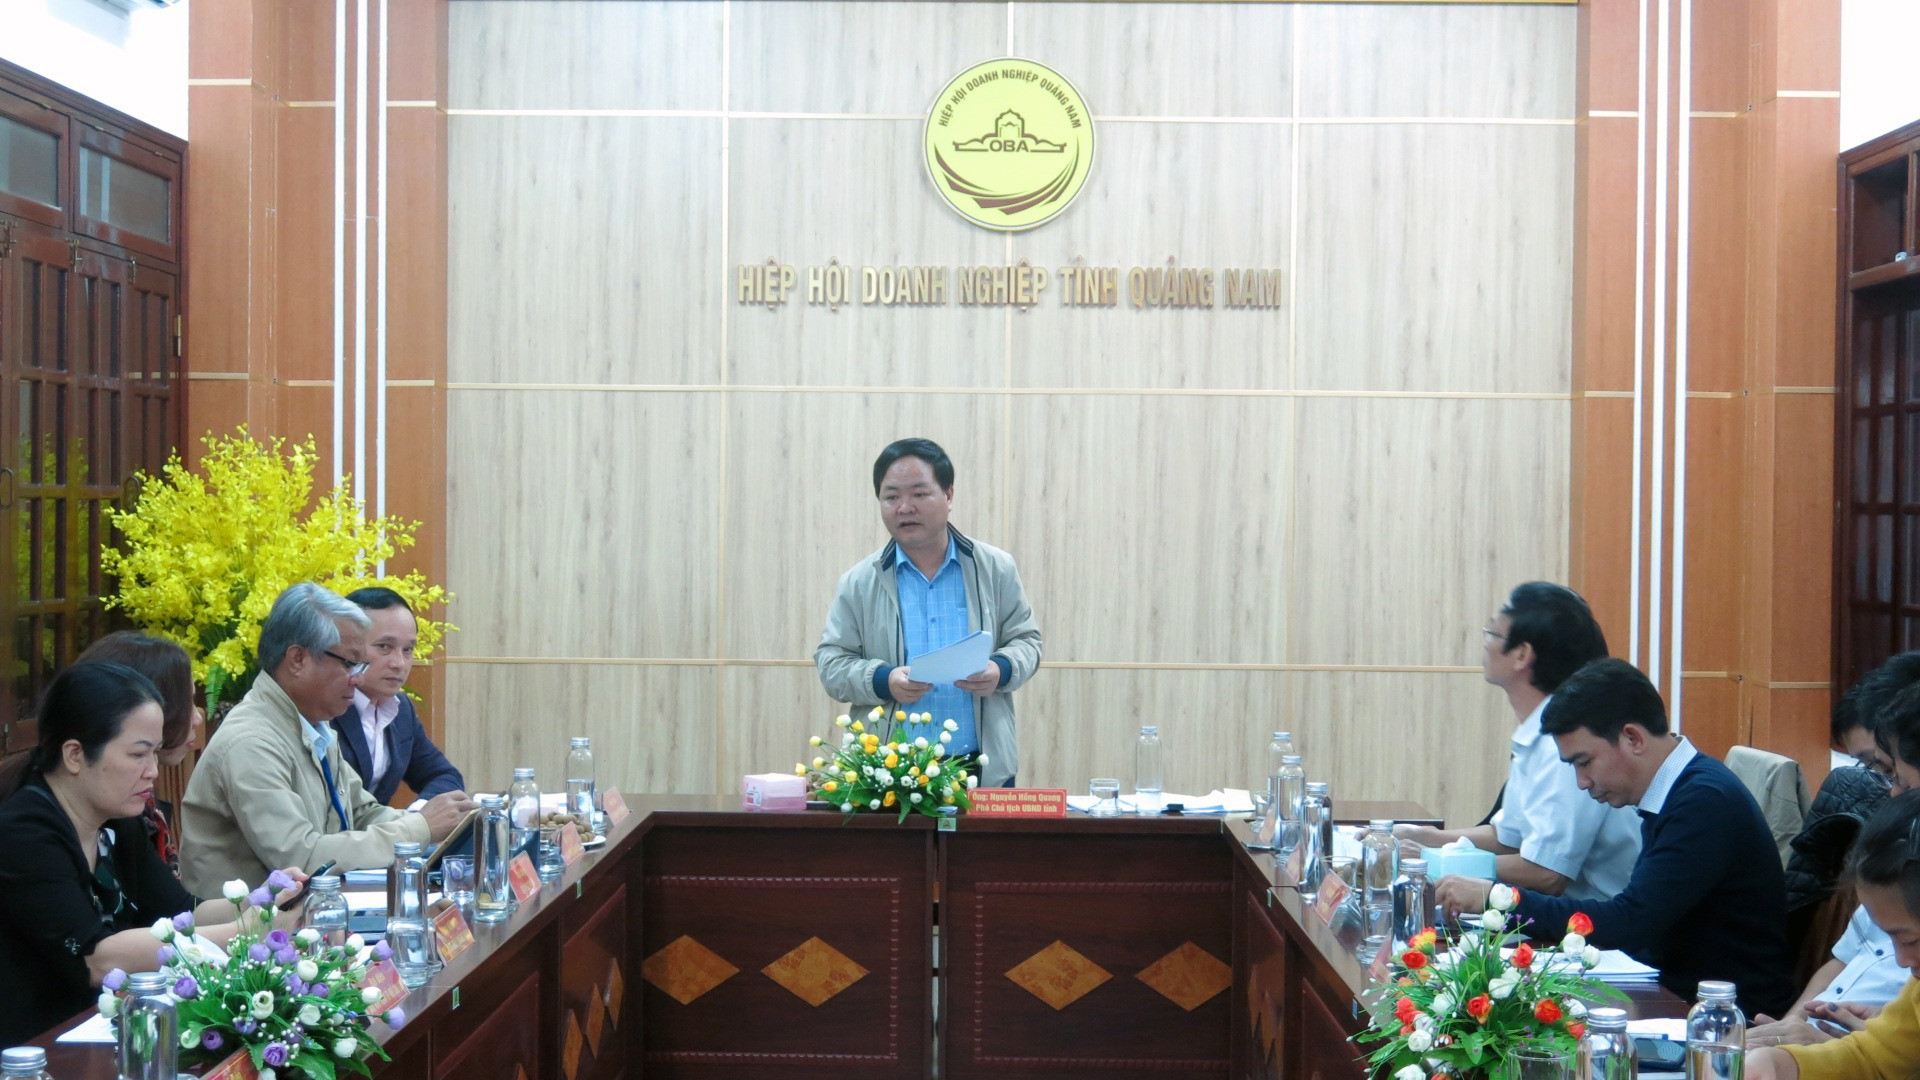 Phó Chủ tịch UBND tỉnh Nguyễn Hồng Quang chủ trì buổi tiếp xúc doanh nghiệp định kỳ vào hôm qua 10.12. Ảnh: T.D